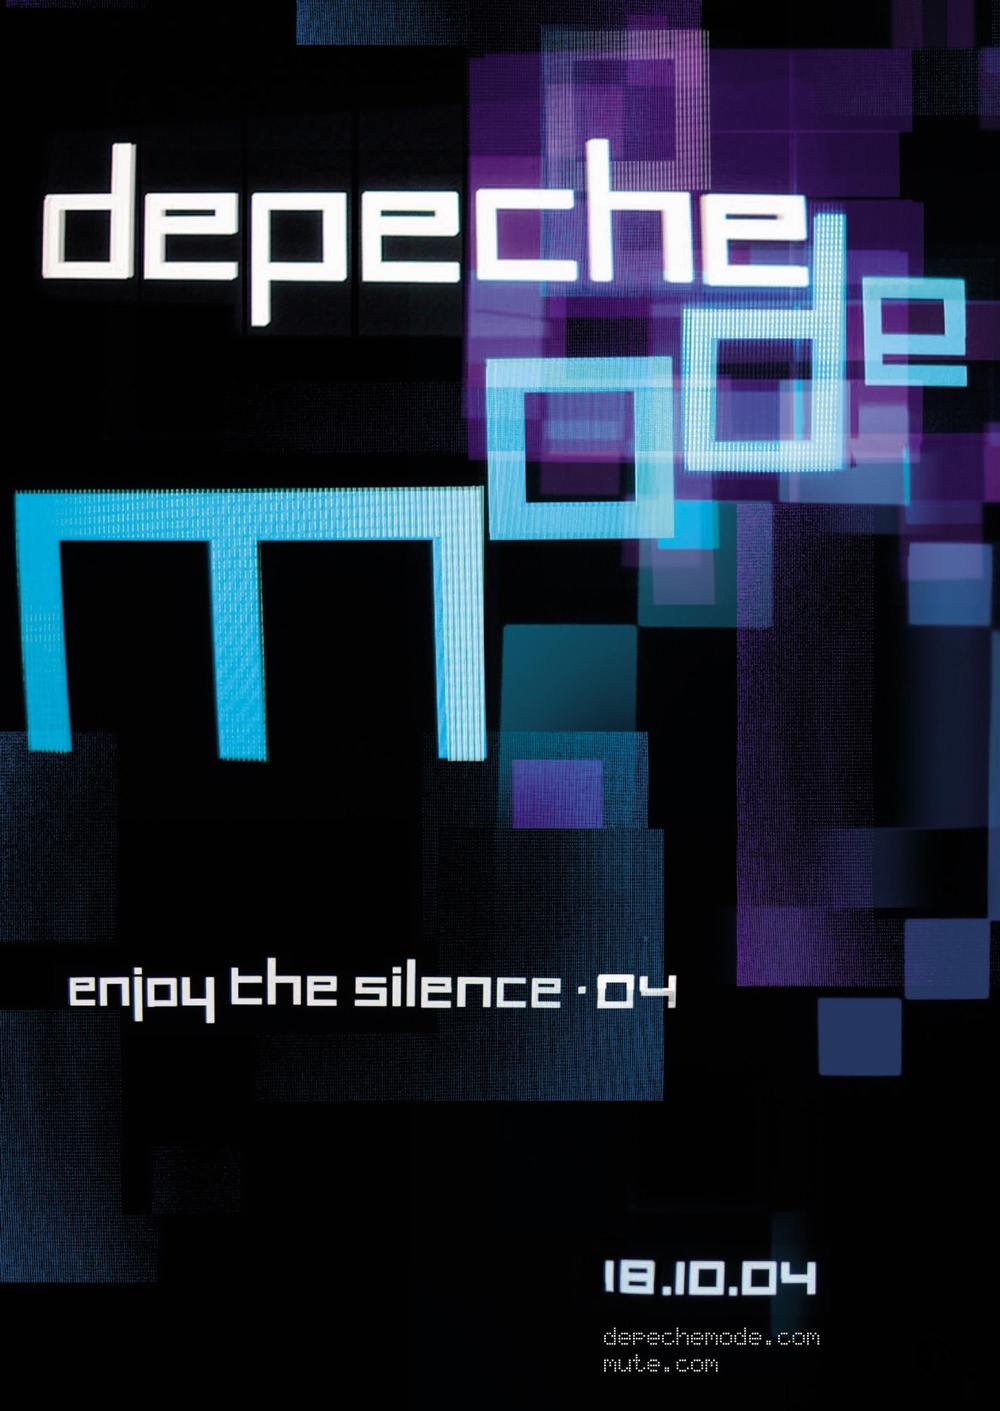 Depeche Mode Enjoy The Silence 04 04